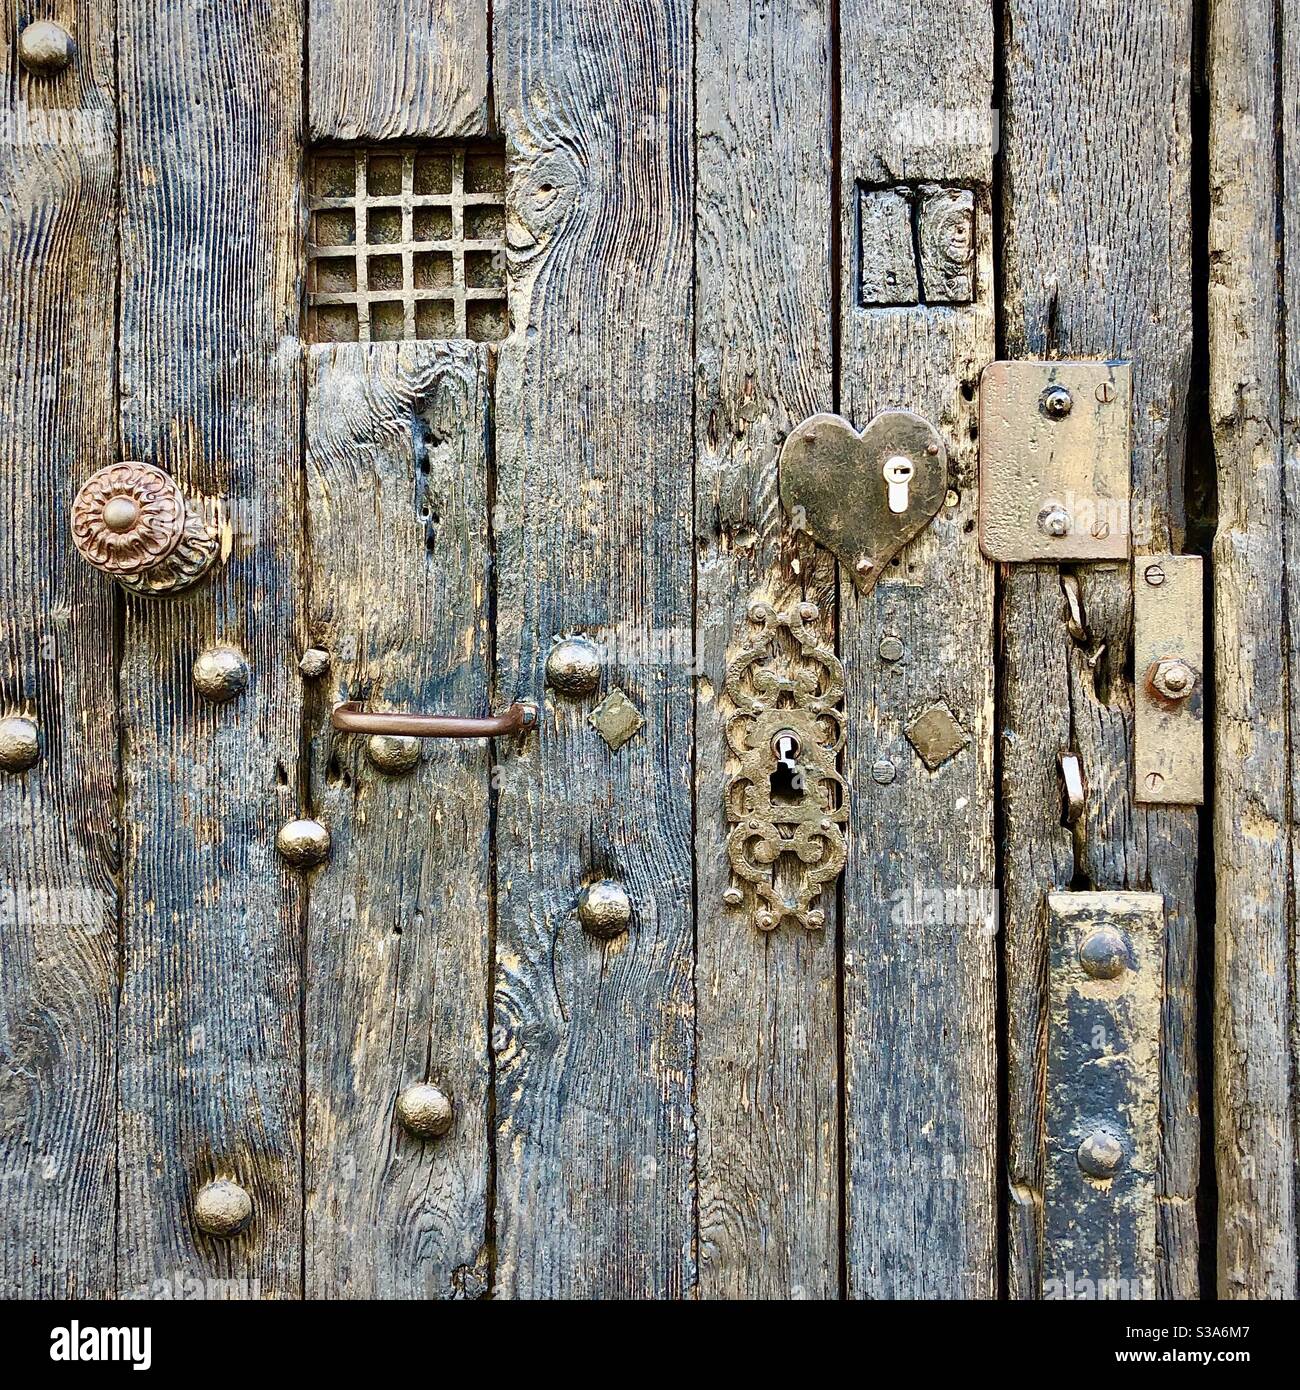 Vecchia porta medievale in quercia con borchie in ferro, maniglie, ferri e riparazioni - Tours, Indre-et-Loire, Francia. Foto Stock